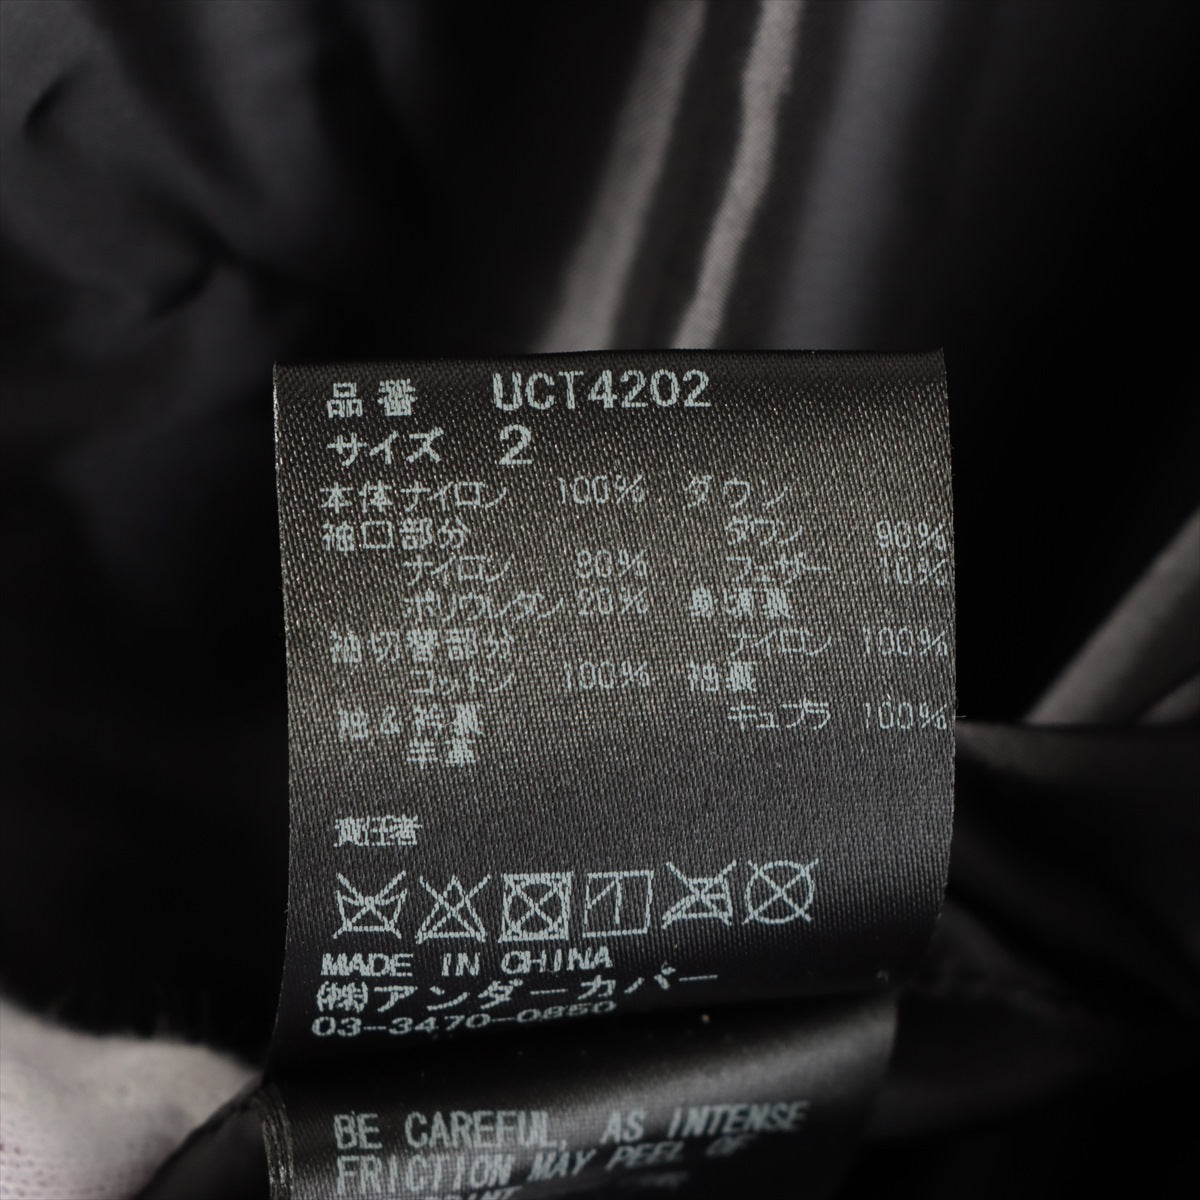 アンダーカバー 17AW ナイロン×ポリウレタン ダウンジャケット 2 メンズ ブラック  UCT4202 ボア